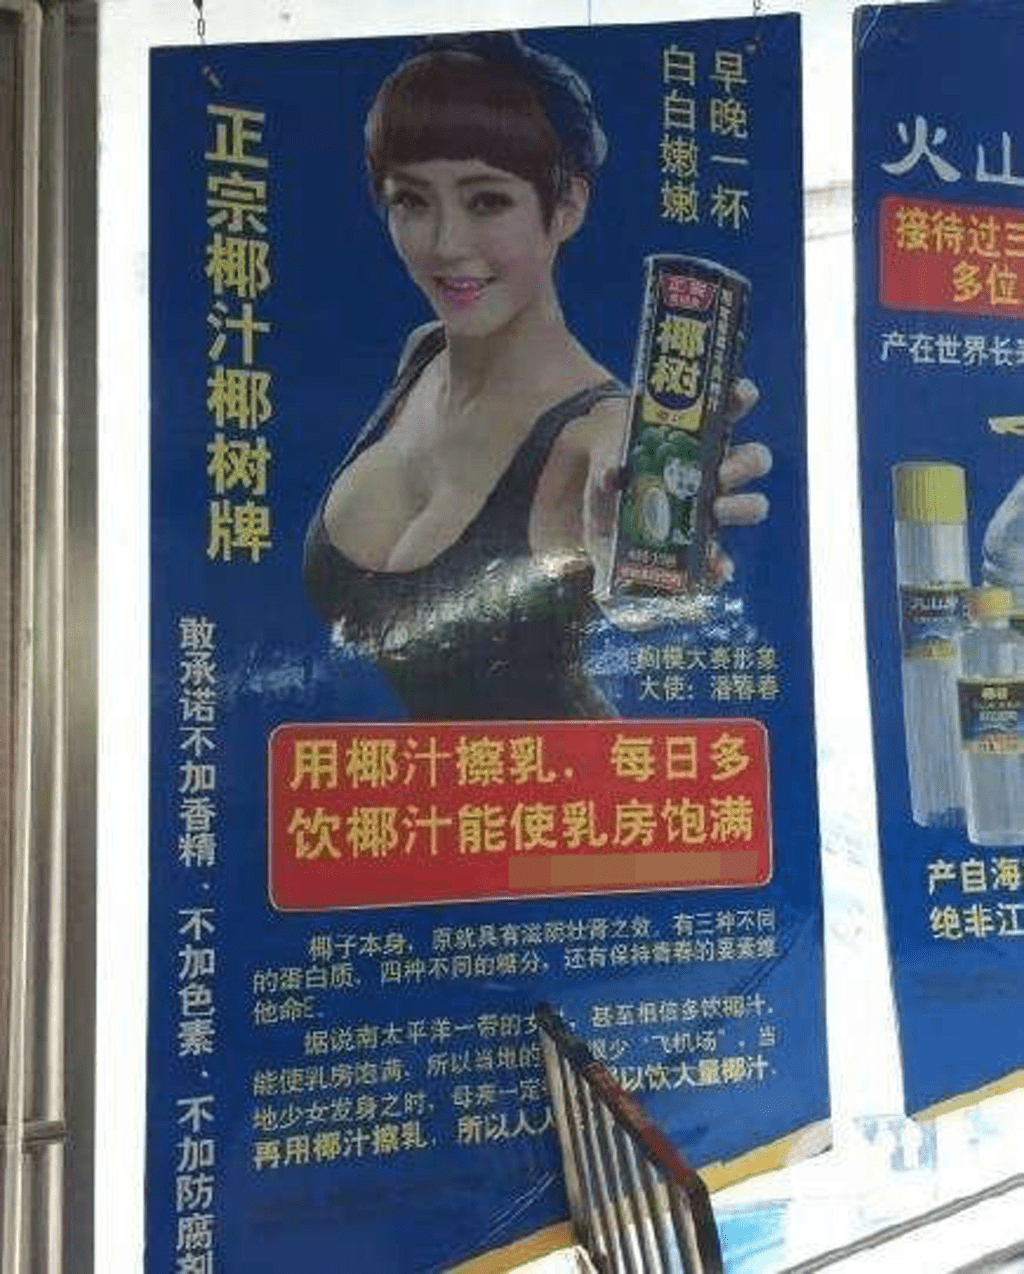 椰樹牌廣告起用身材豐滿女性賣廣告，再加上「用椰汁擦乳」等用語。